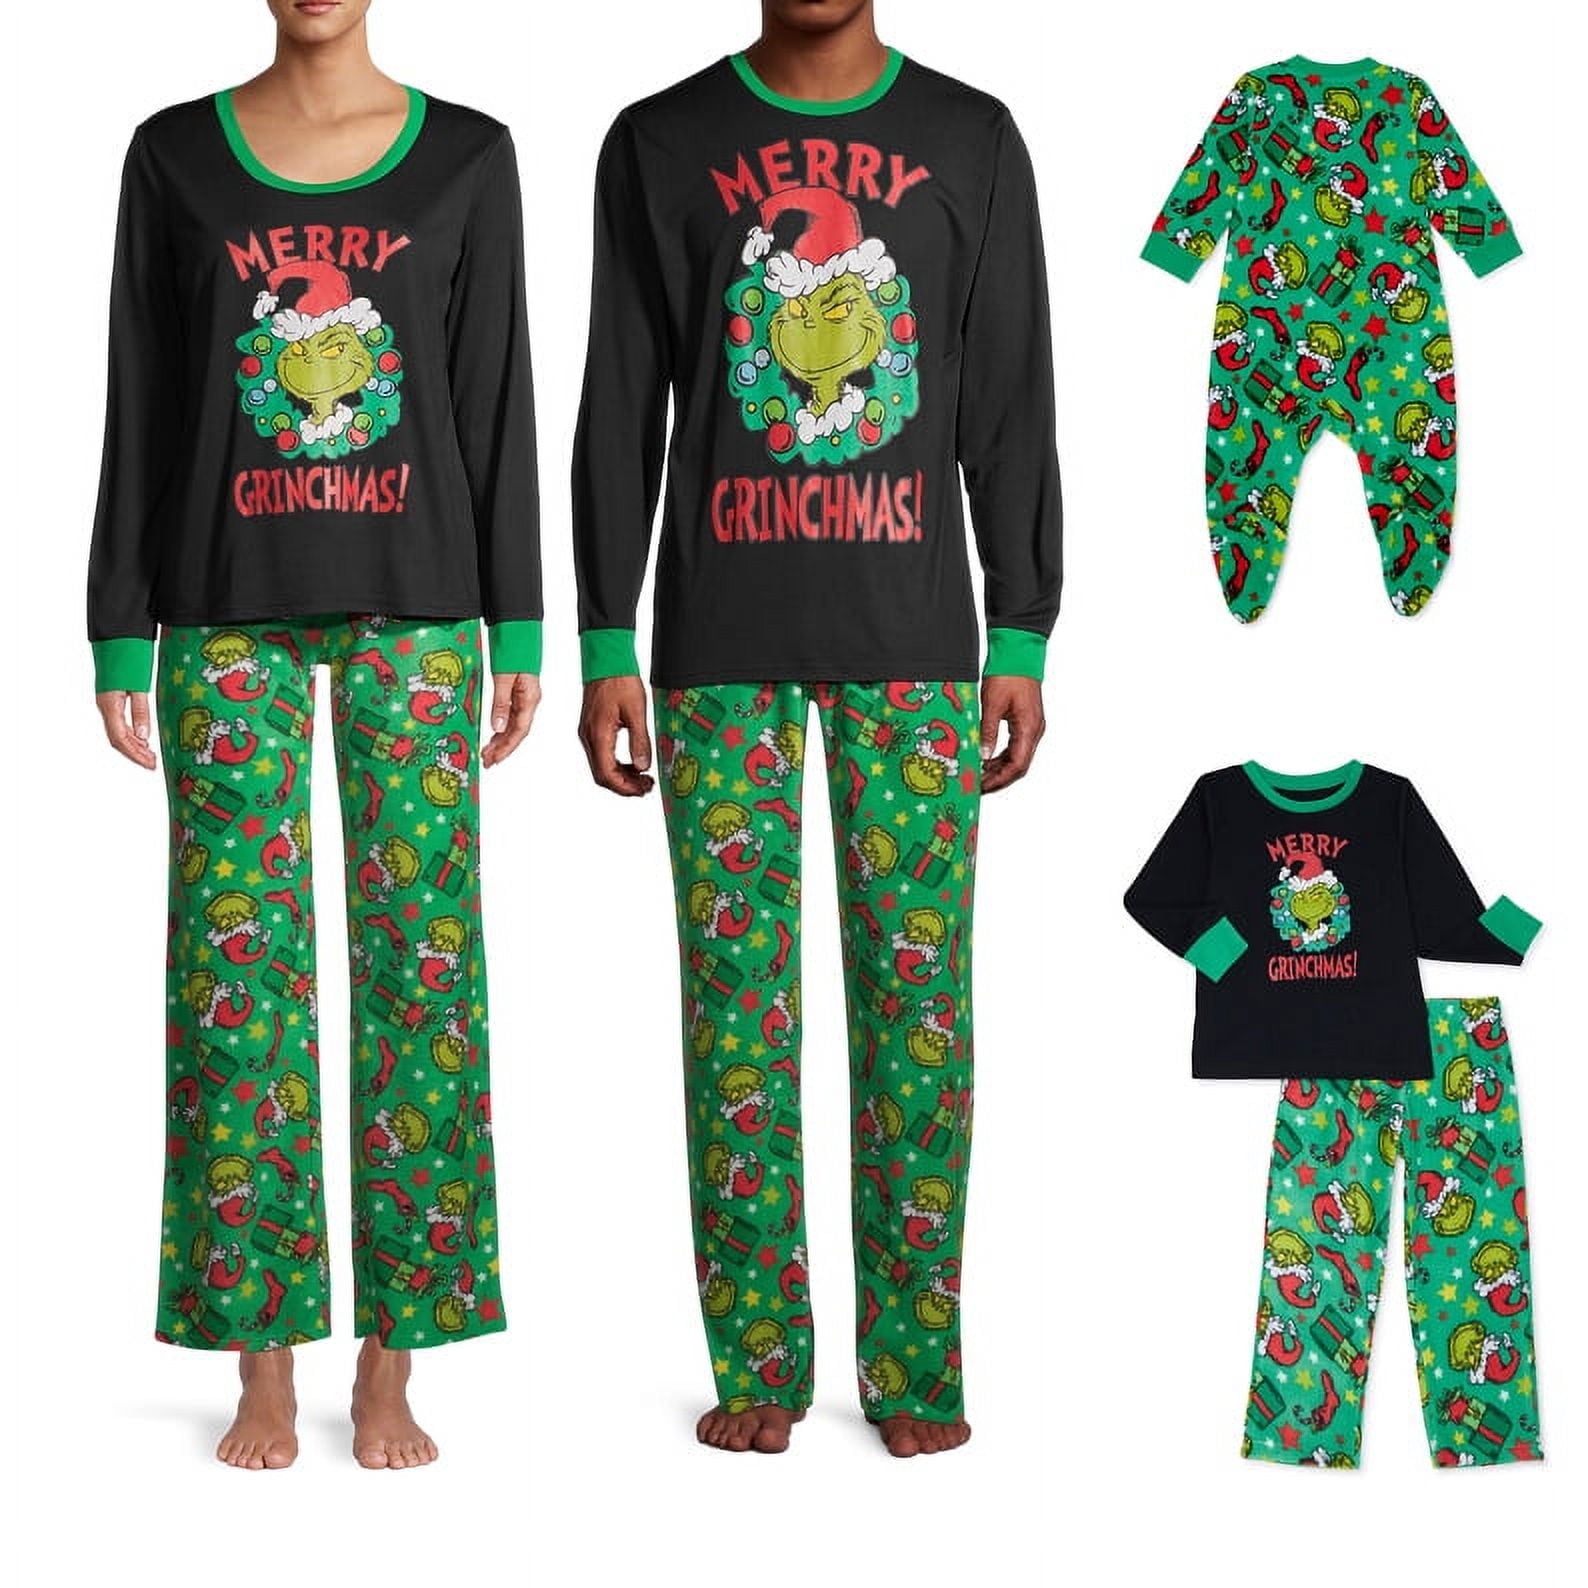 Christmas Pajamas For Family - Walmart.com